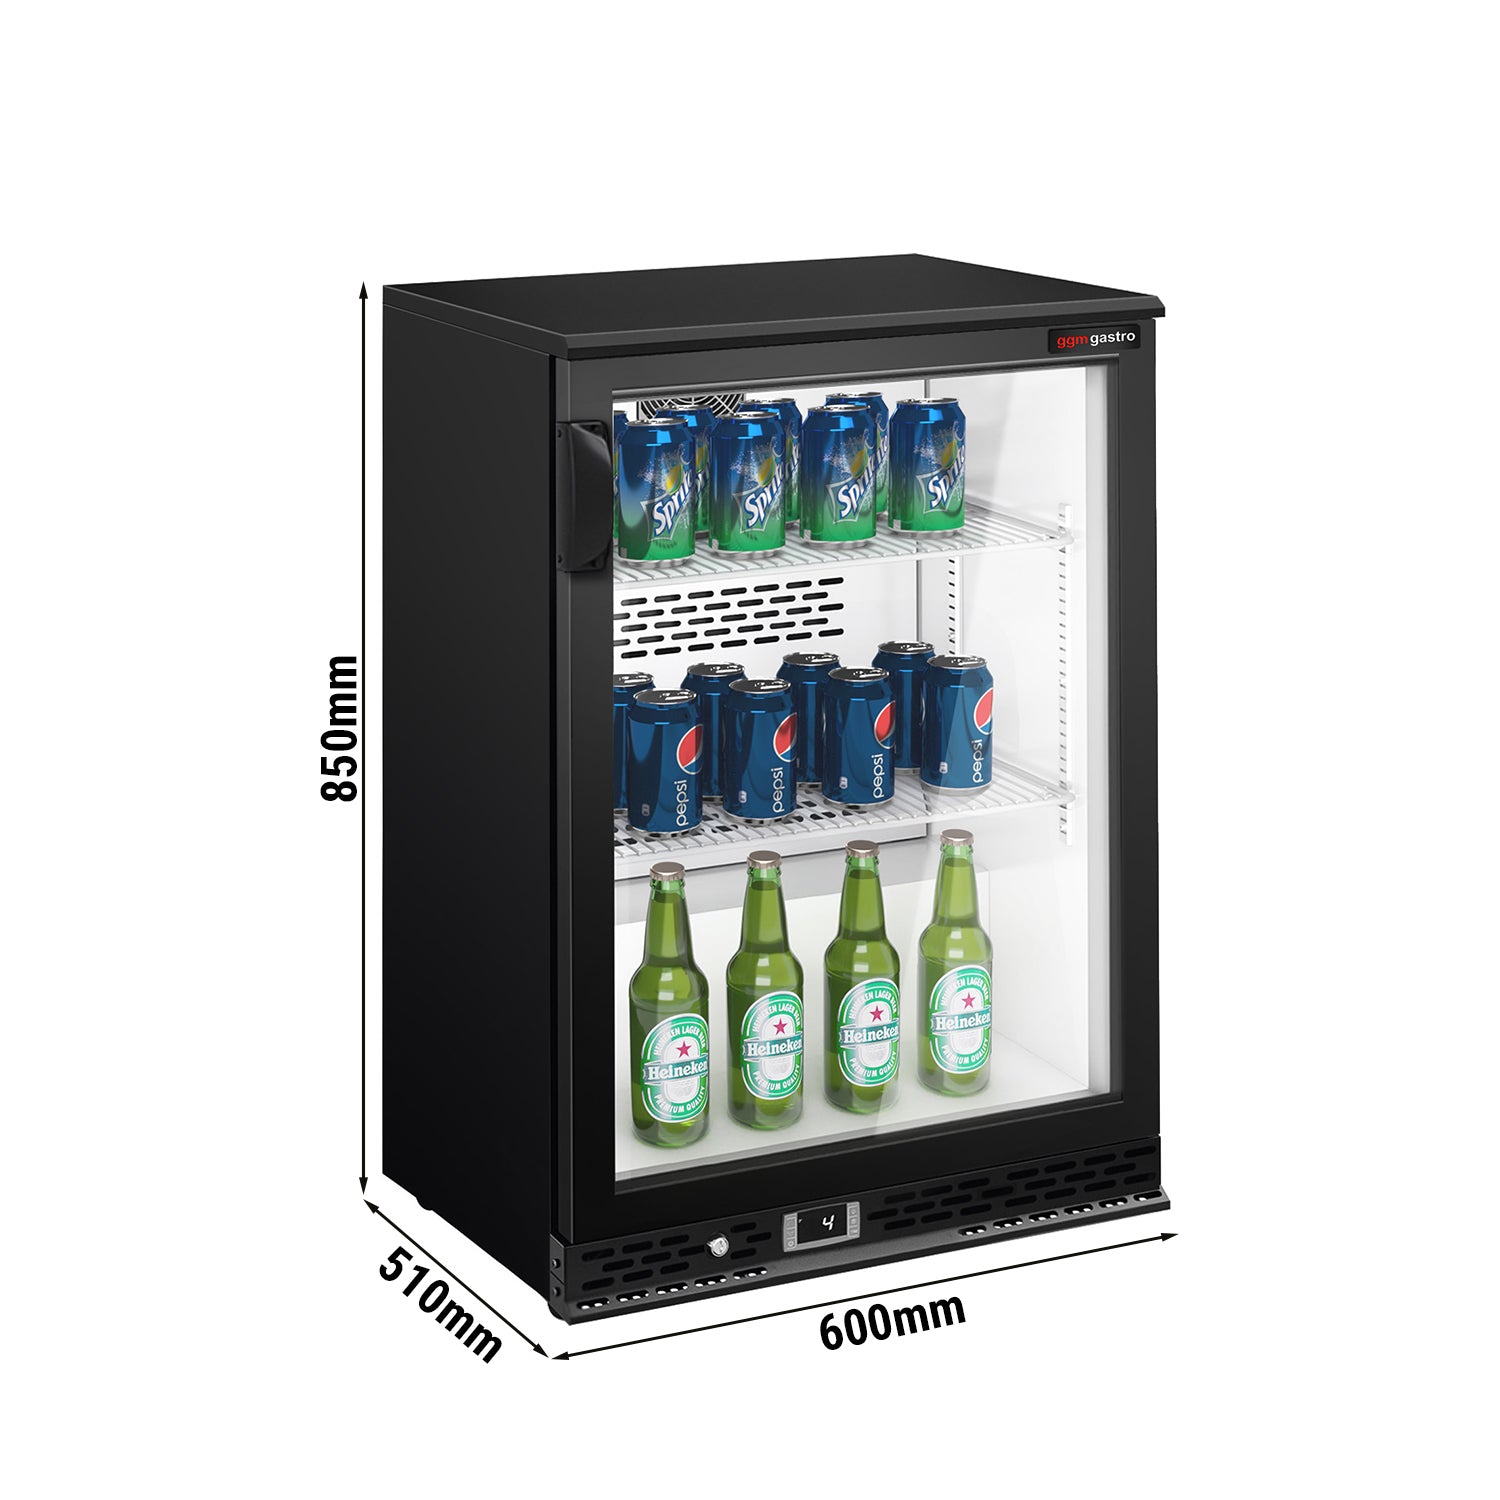 Хладилна маса за бар напитки - 0,6 x 0,51 m - 125 литра - с 1 стъклена врата - черна